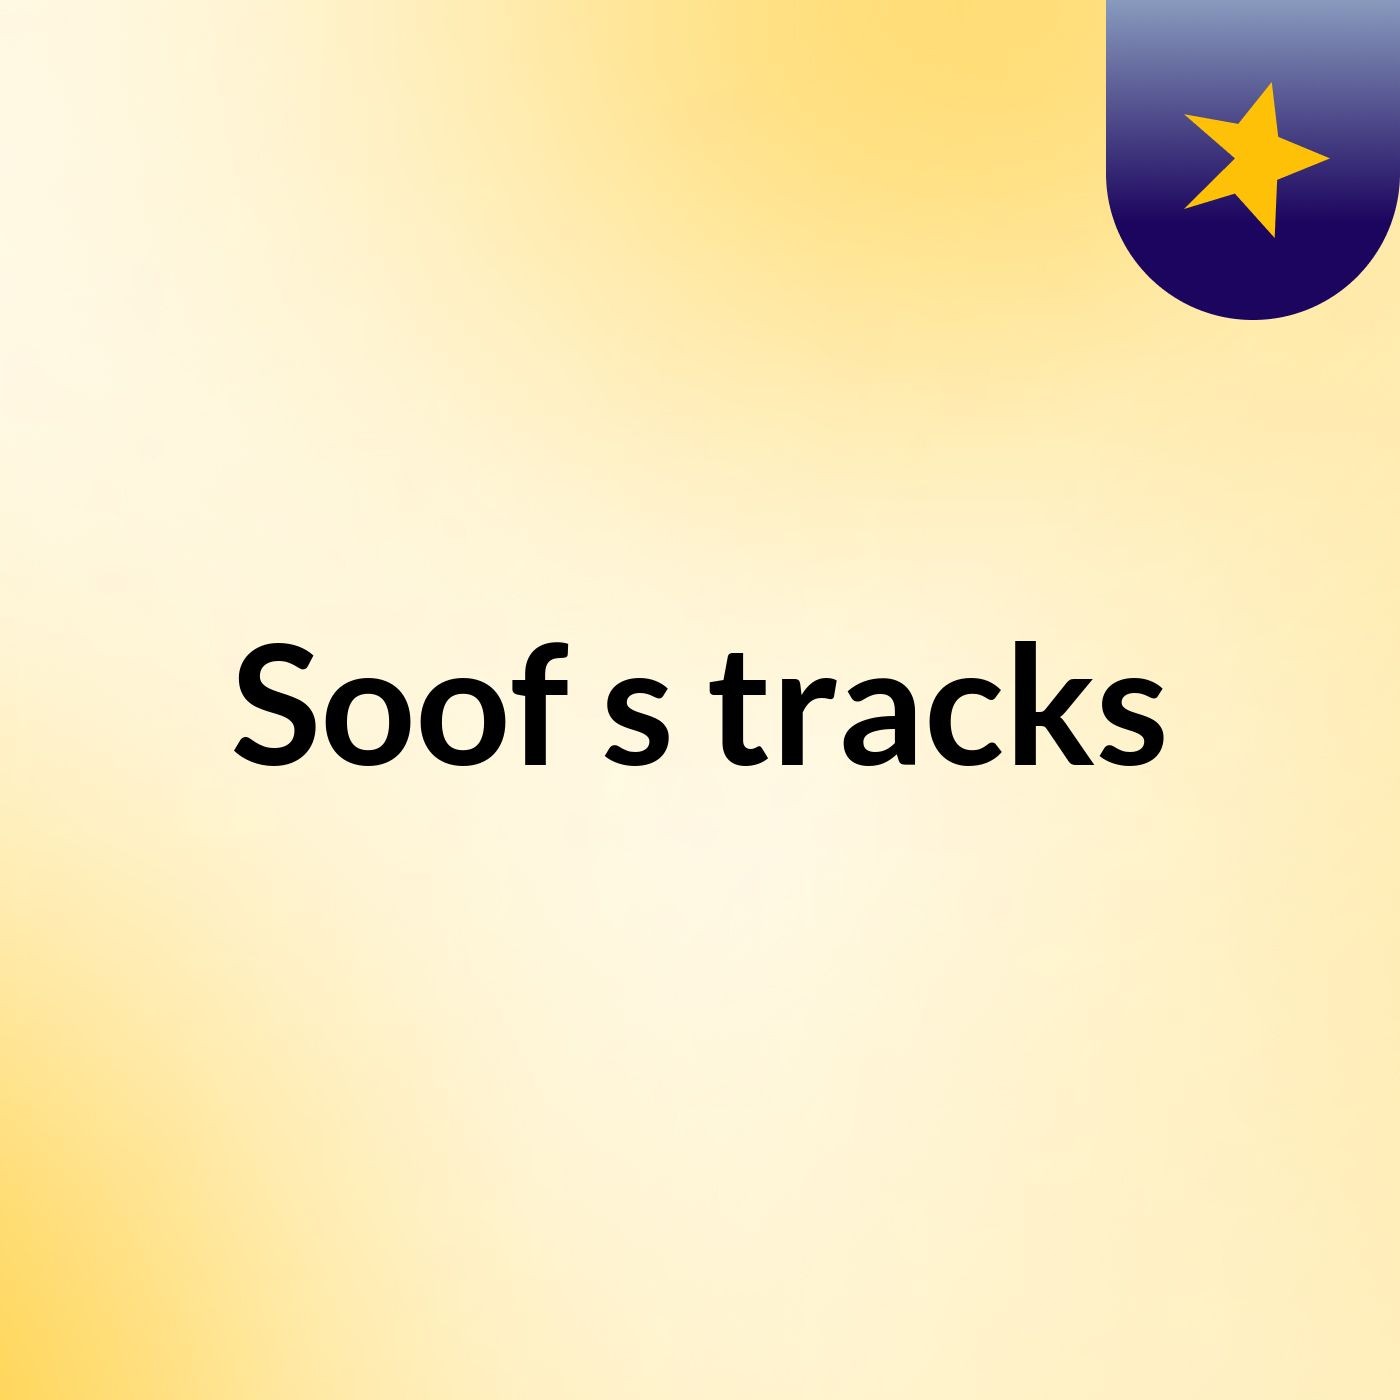 Soof's tracks